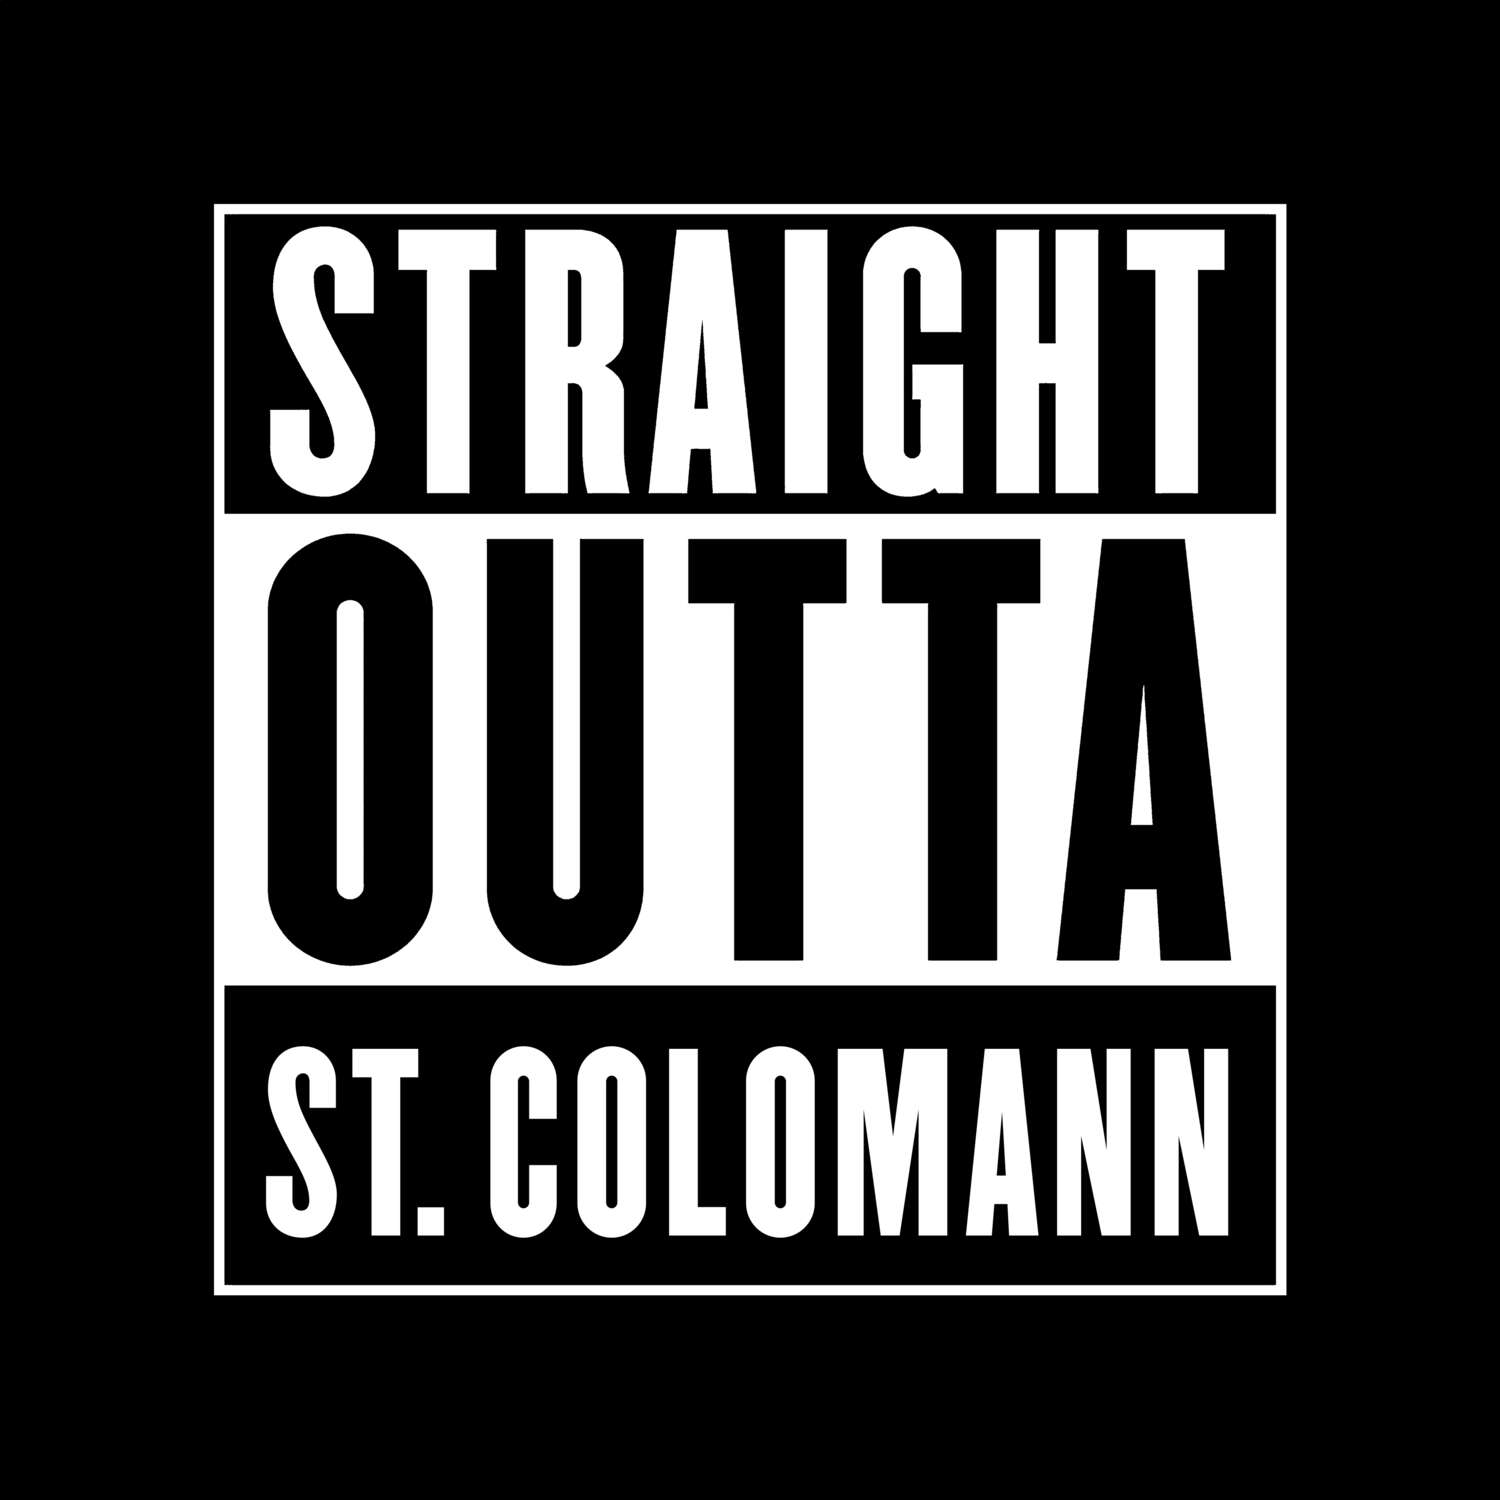 St. Colomann T-Shirt »Straight Outta«